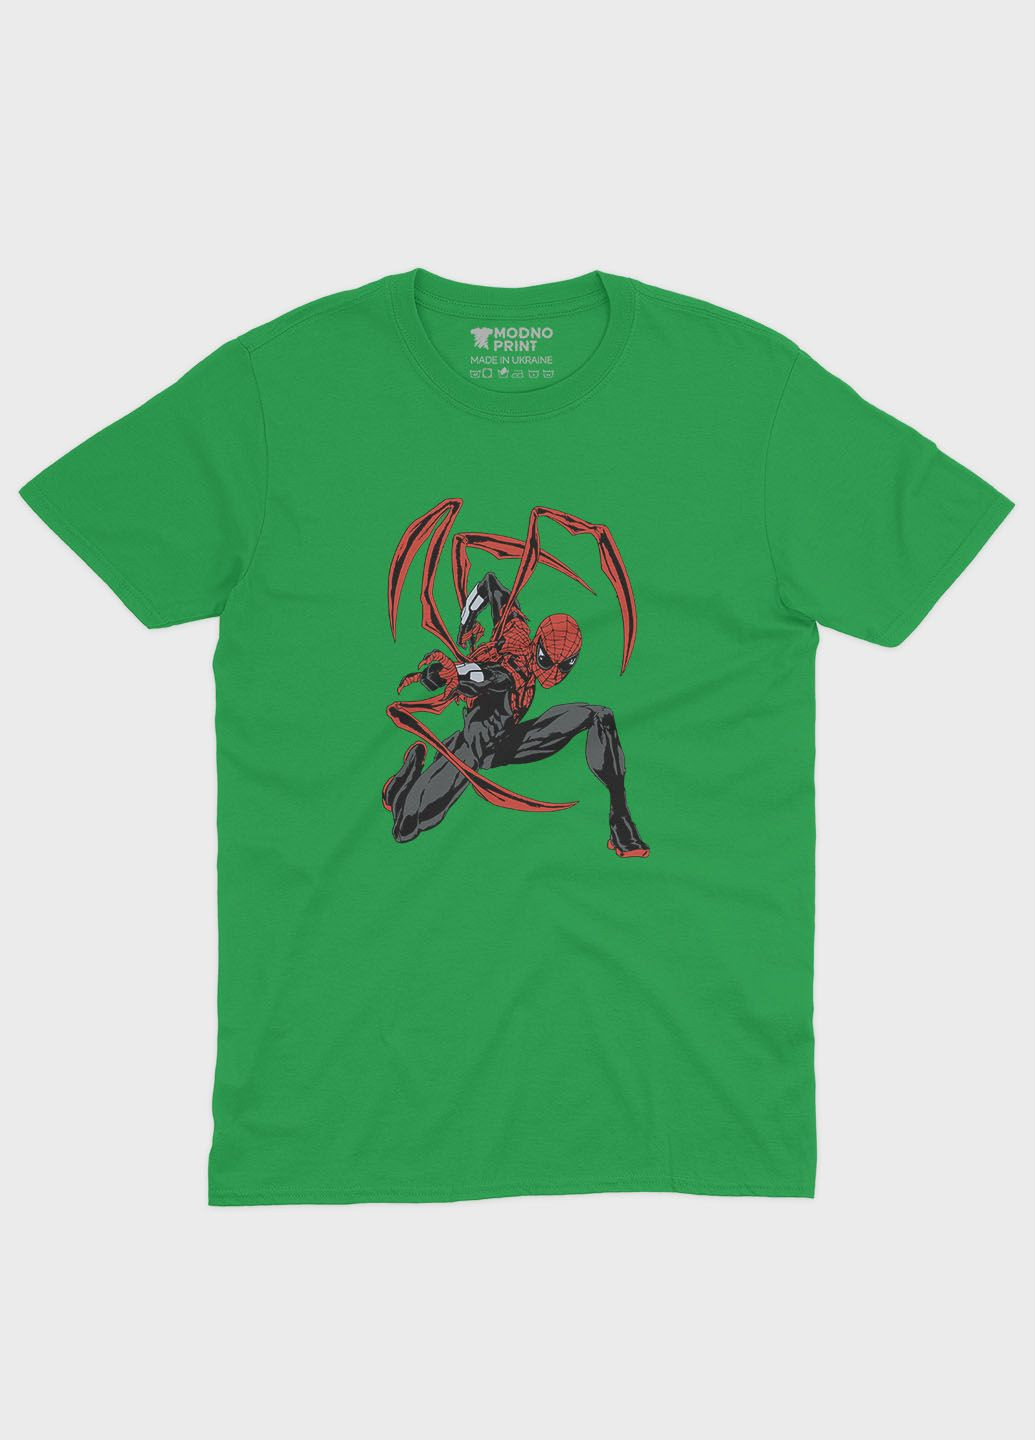 Зелена демісезонна футболка для хлопчика з принтом супергероя - людина-павук (ts001-1-keg-006-014-115-b) Modno